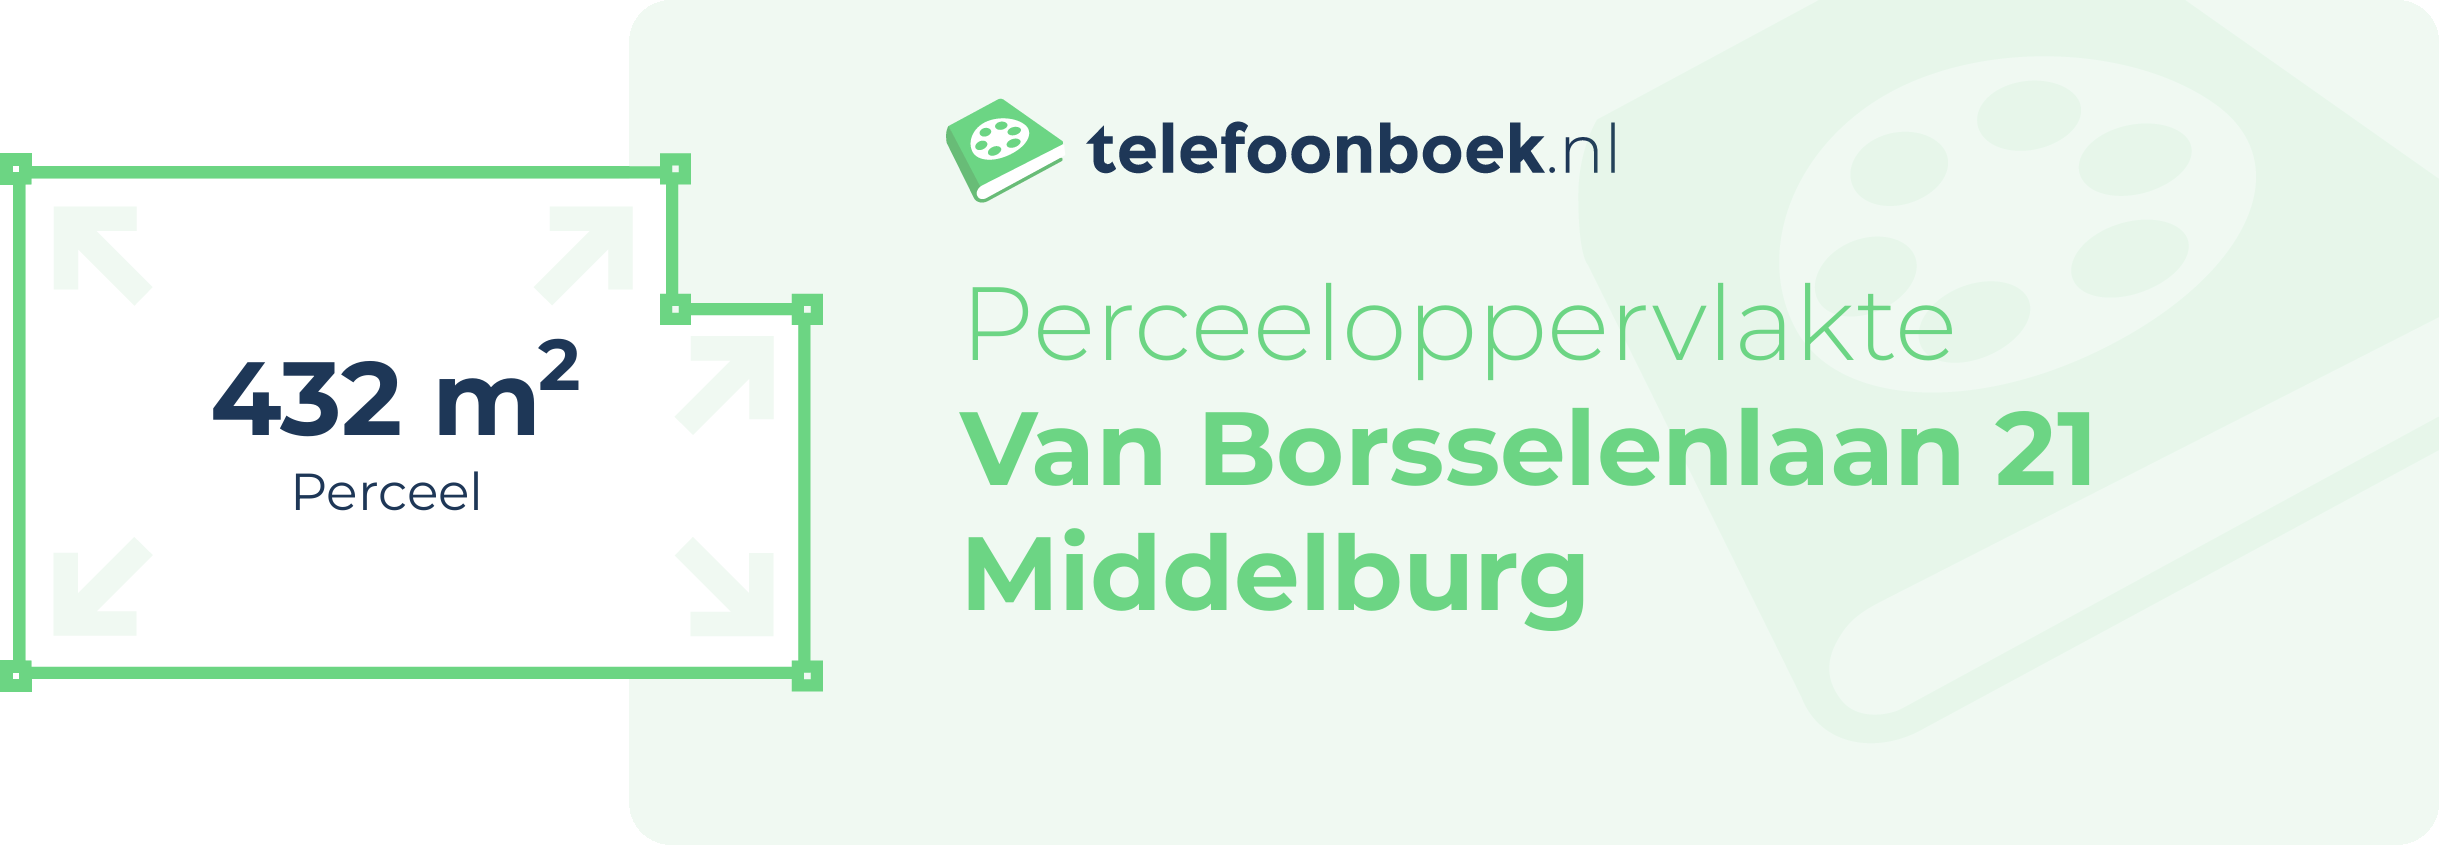 Perceeloppervlakte Van Borsselenlaan 21 Middelburg